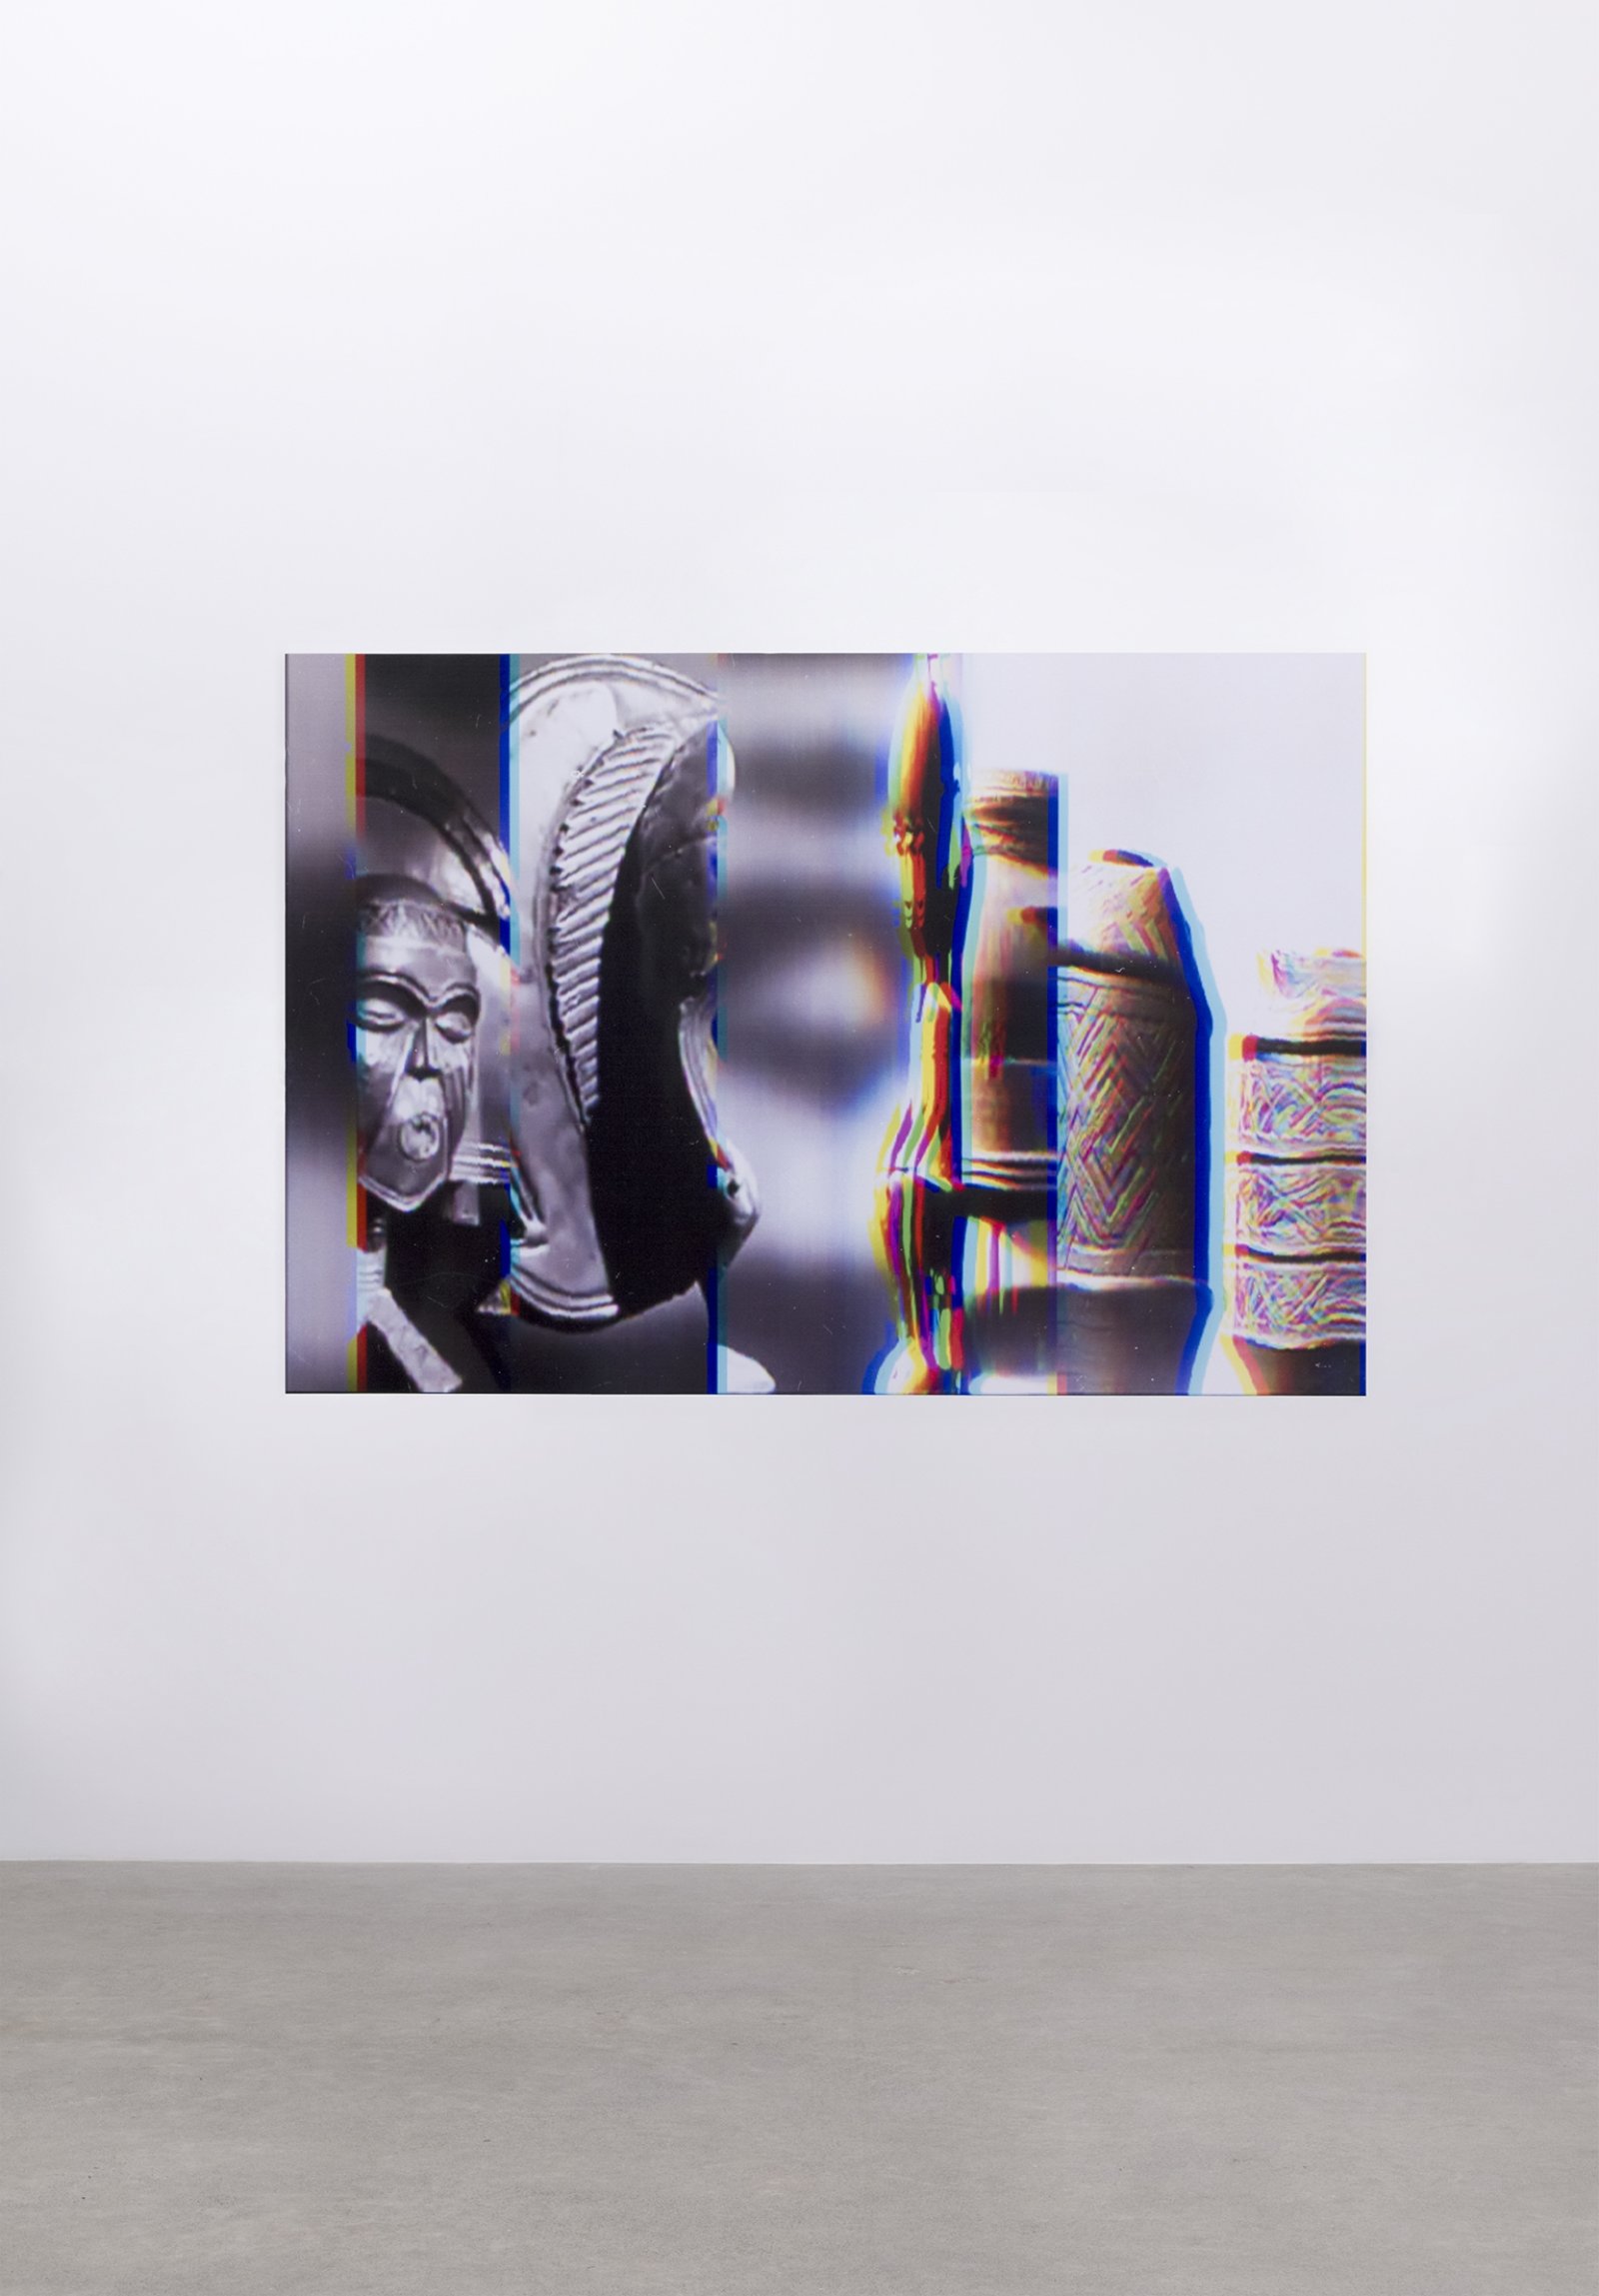 Raymond Boisjoly, Histories (Possibilities), 2015, solvent-based inkjet print on vinyl, 52 x 75 in. (132 x 191 cm)